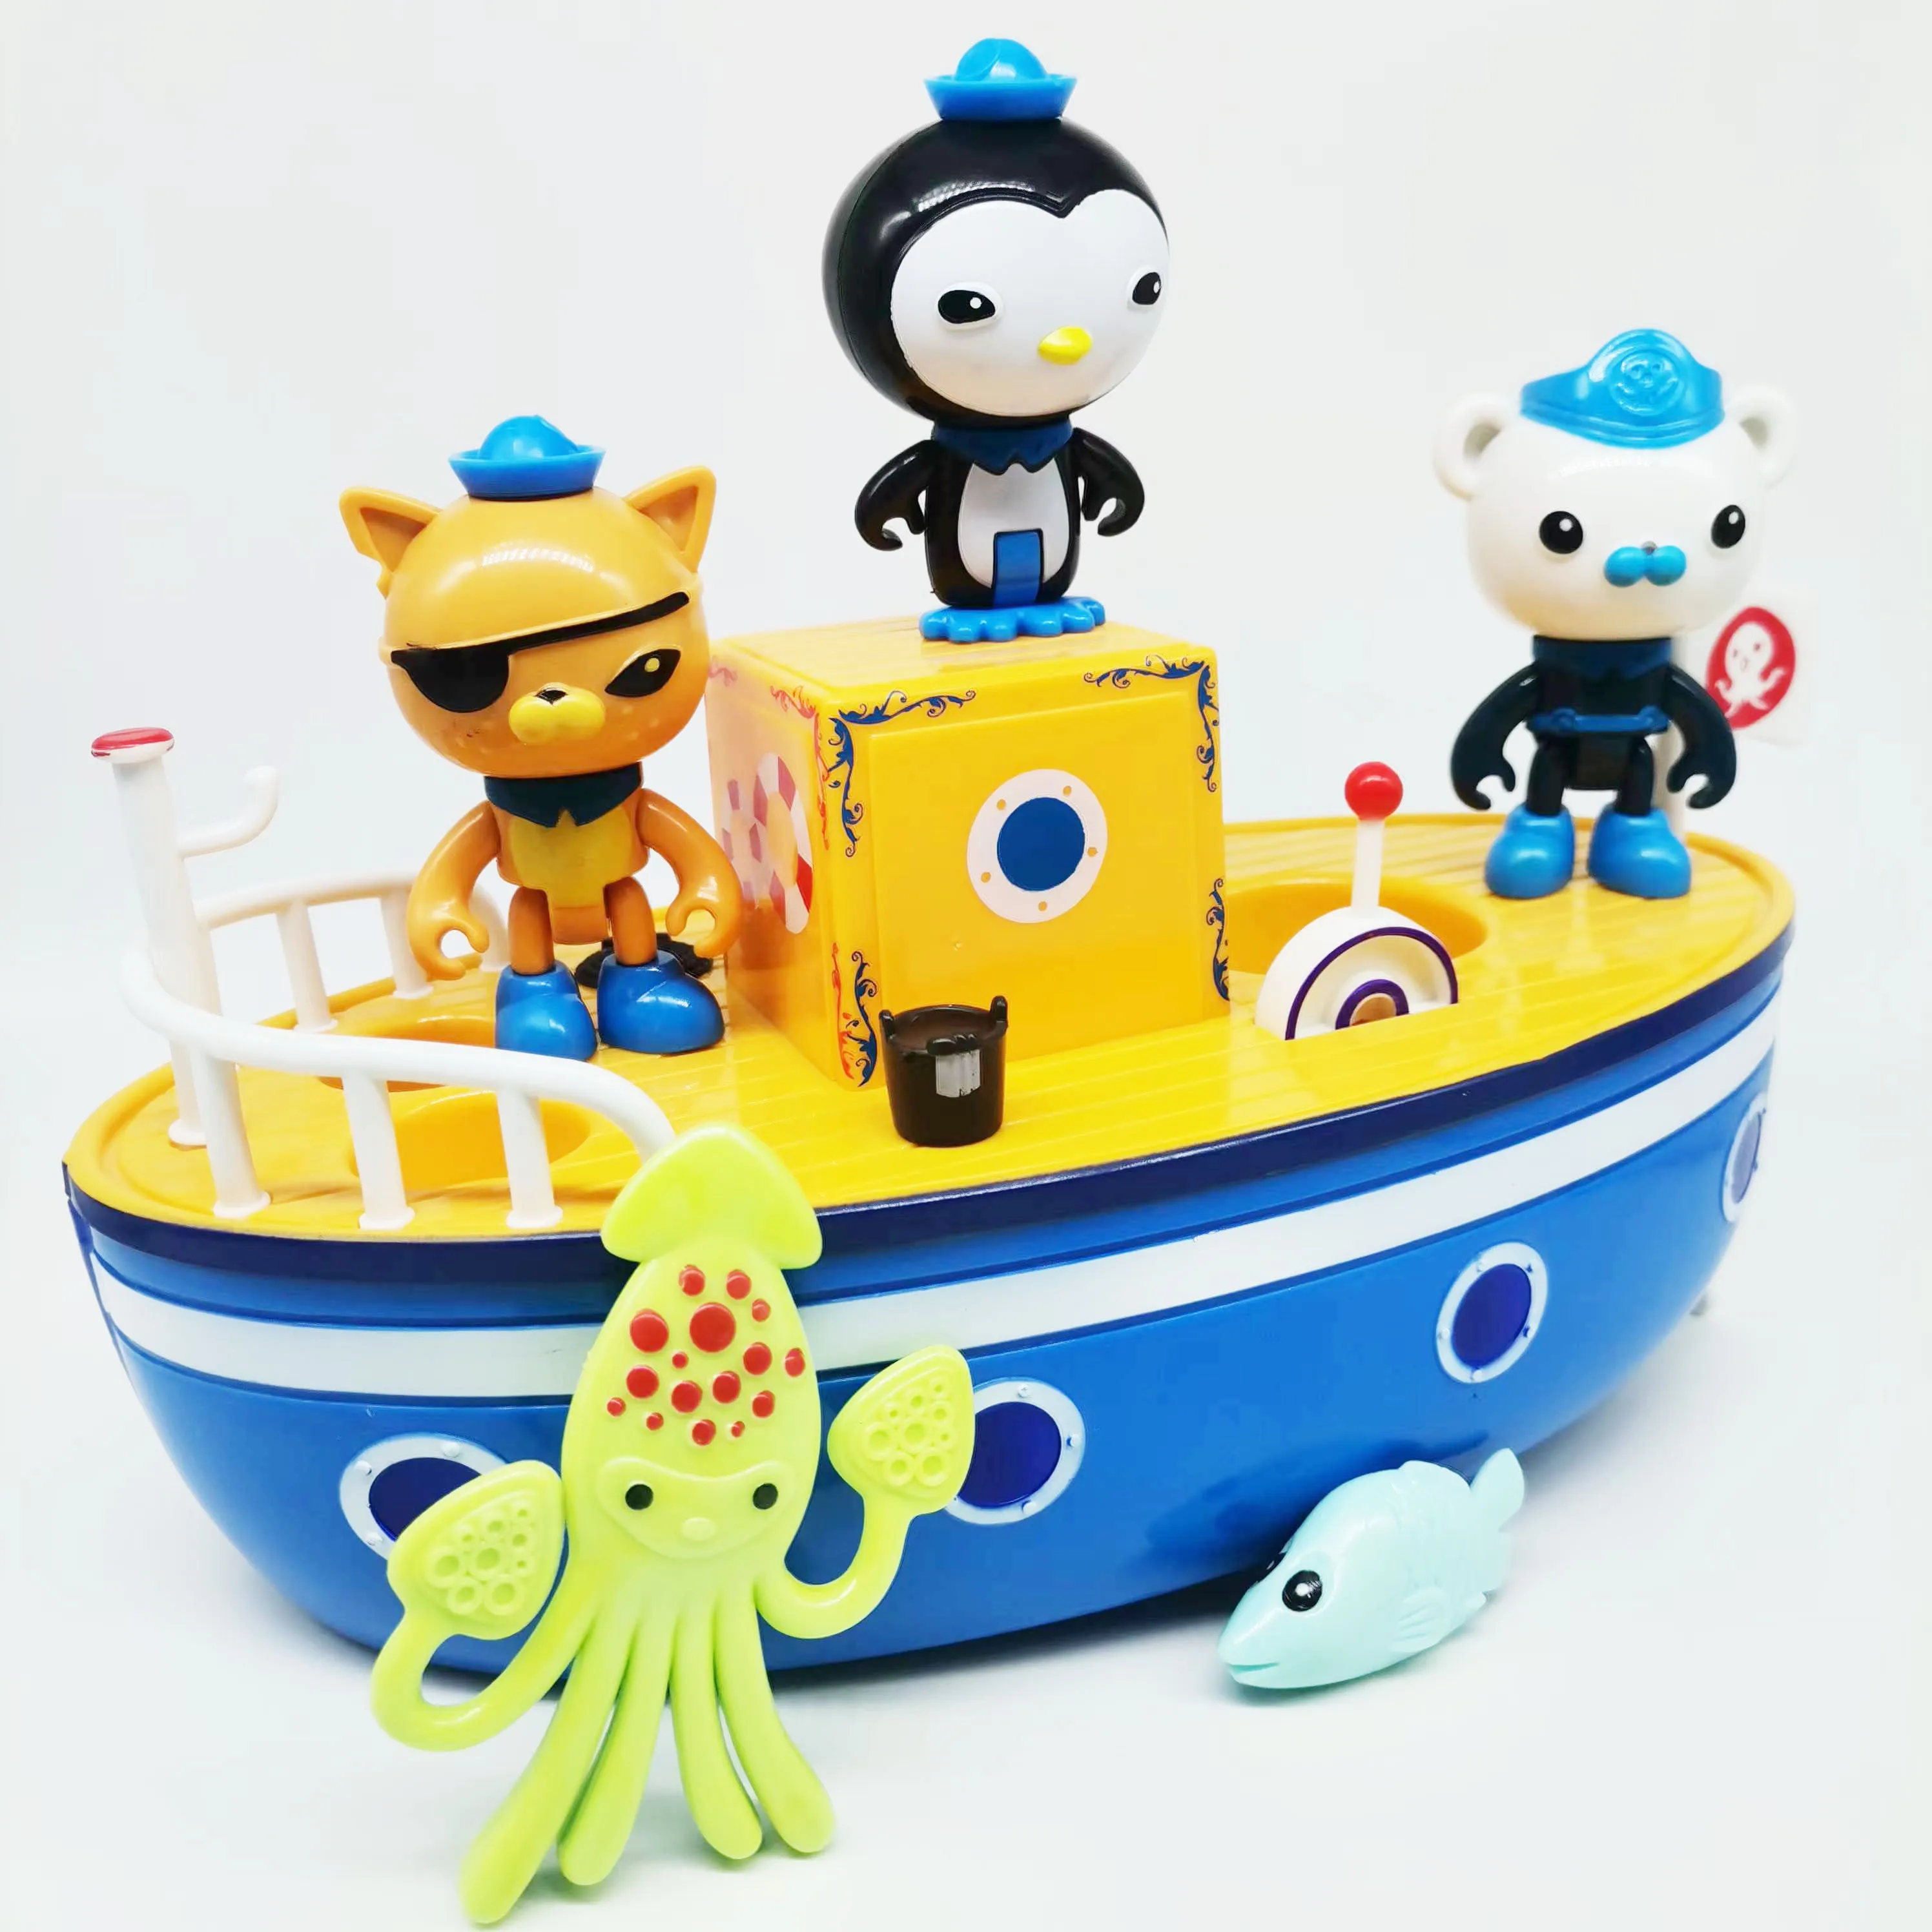 

Экшн-фигурки octonauts, Игрушки для ванны Kwazii Barnacles, песо, ГУП, лодка для ванны, игрушка-поплавок на воде, игрушка для детей